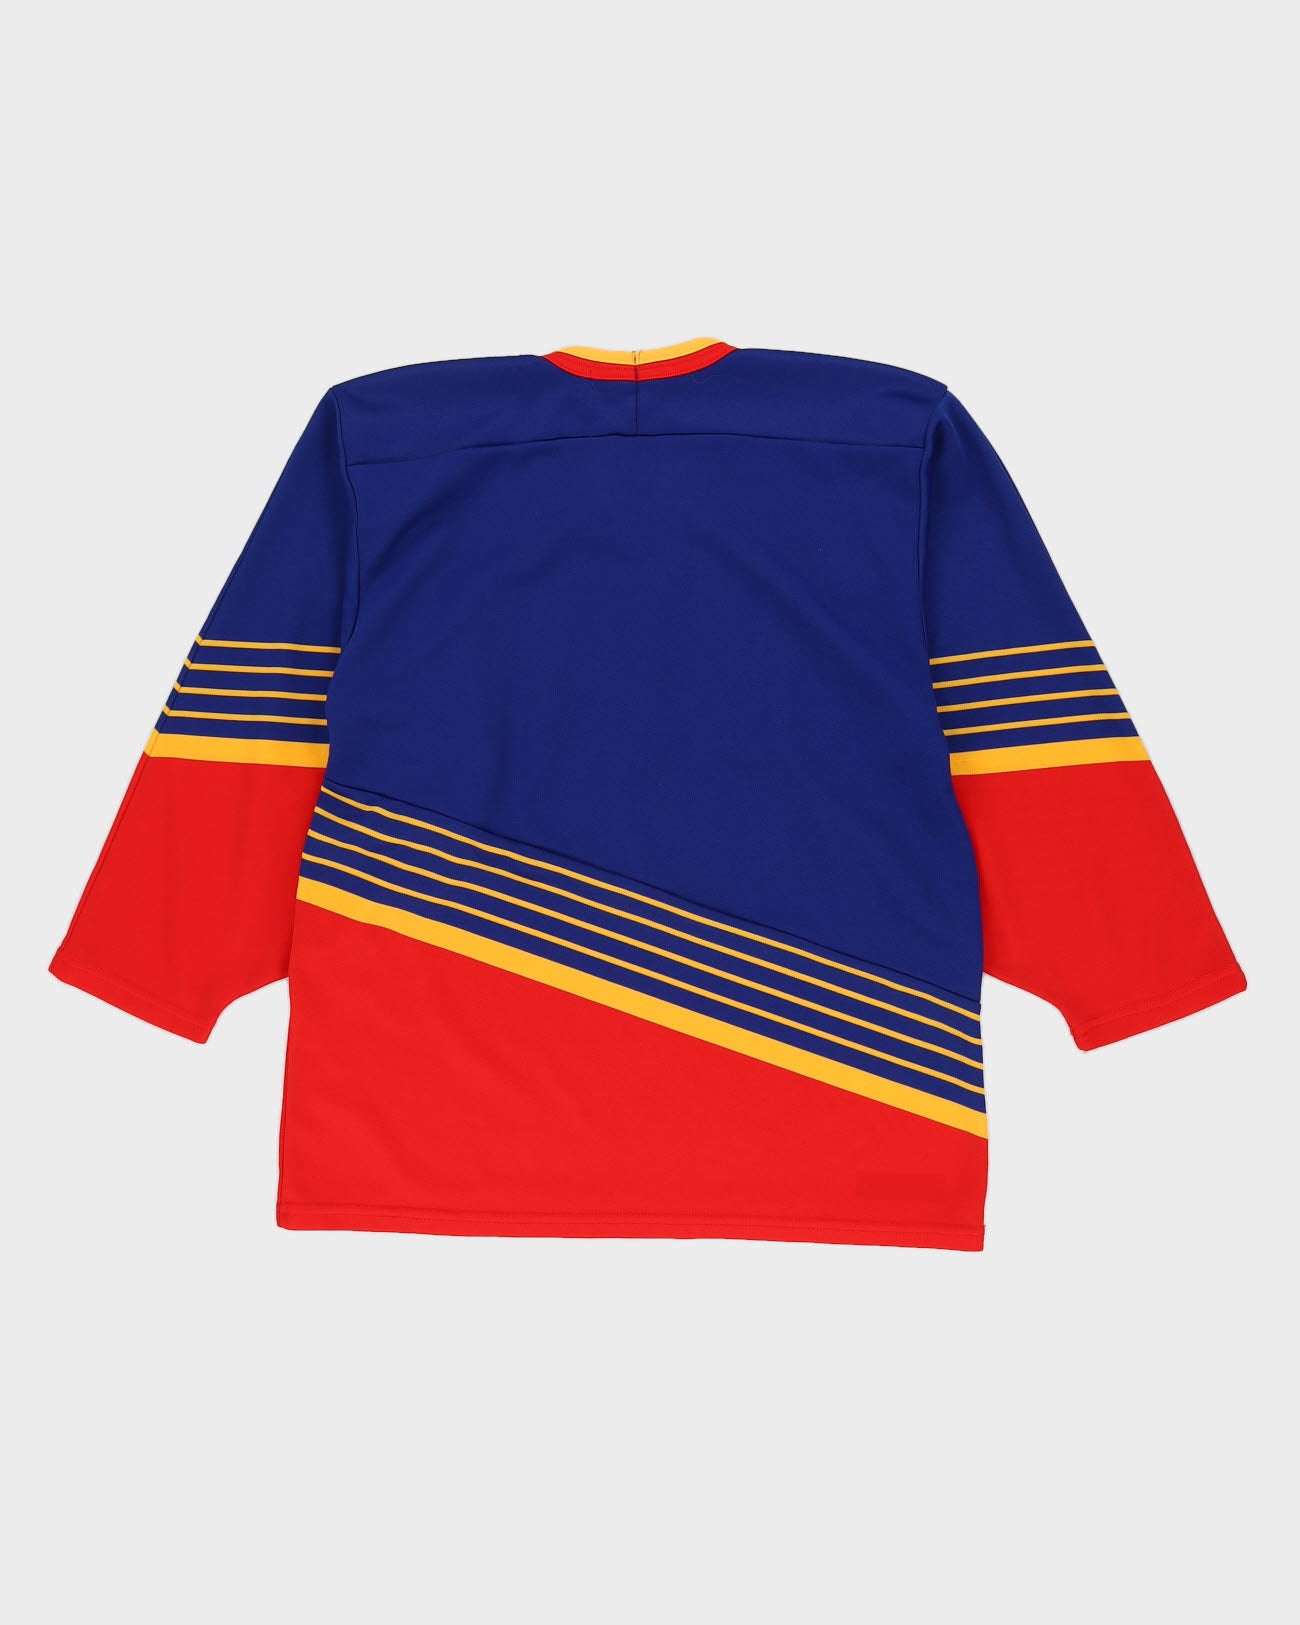 Vintage 1990s St. Louis Blues T-shirt Size Medium 